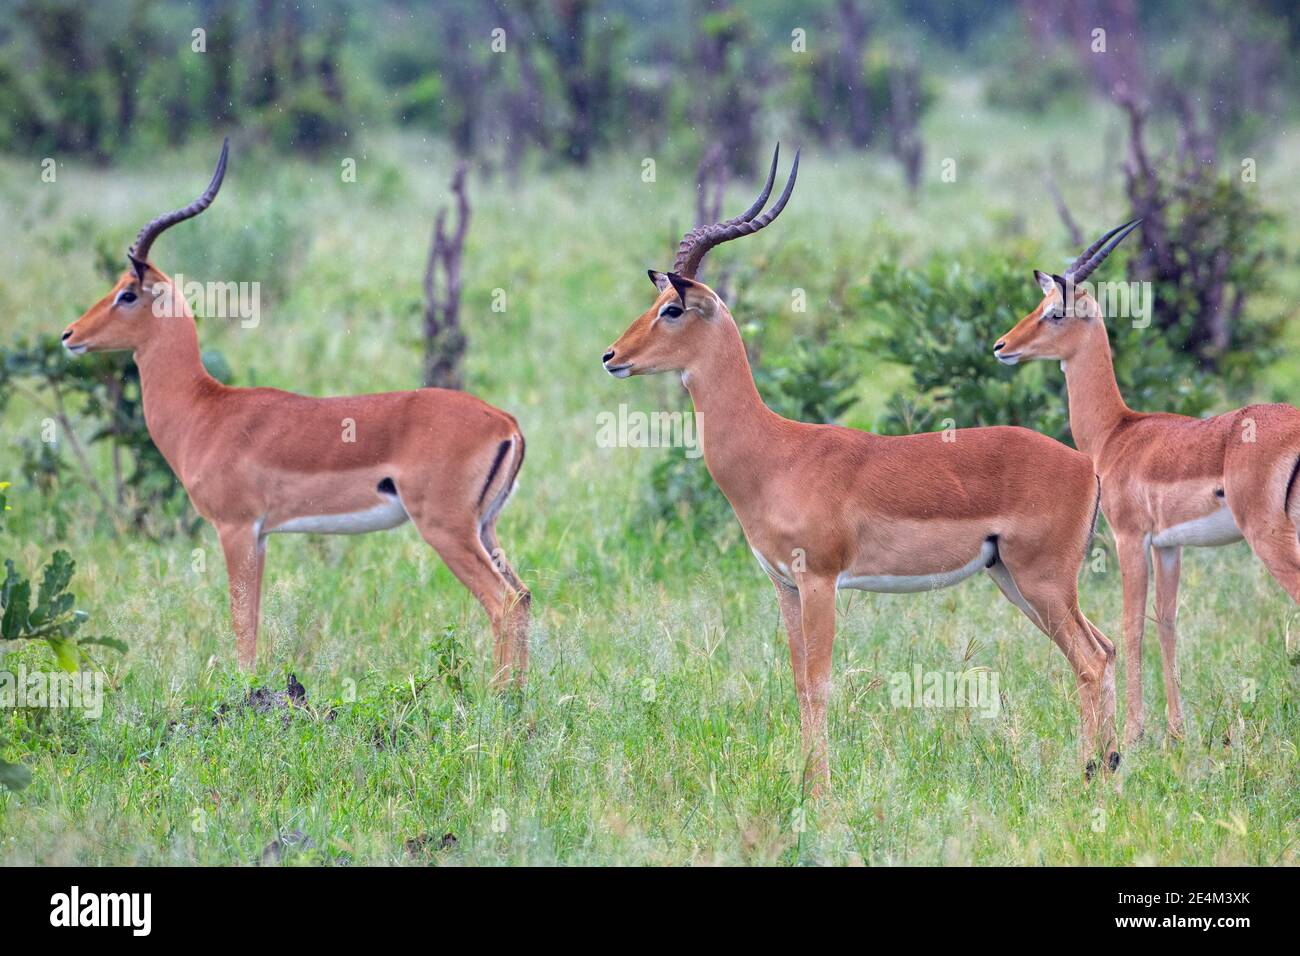 Impala (Aepyceros melampus). Tre maschi di diverse età, in piedi di profilo, all'attenzione. Rileva una direzione focalizzata. Il linguaggio del corpo dice tutto. Foto Stock